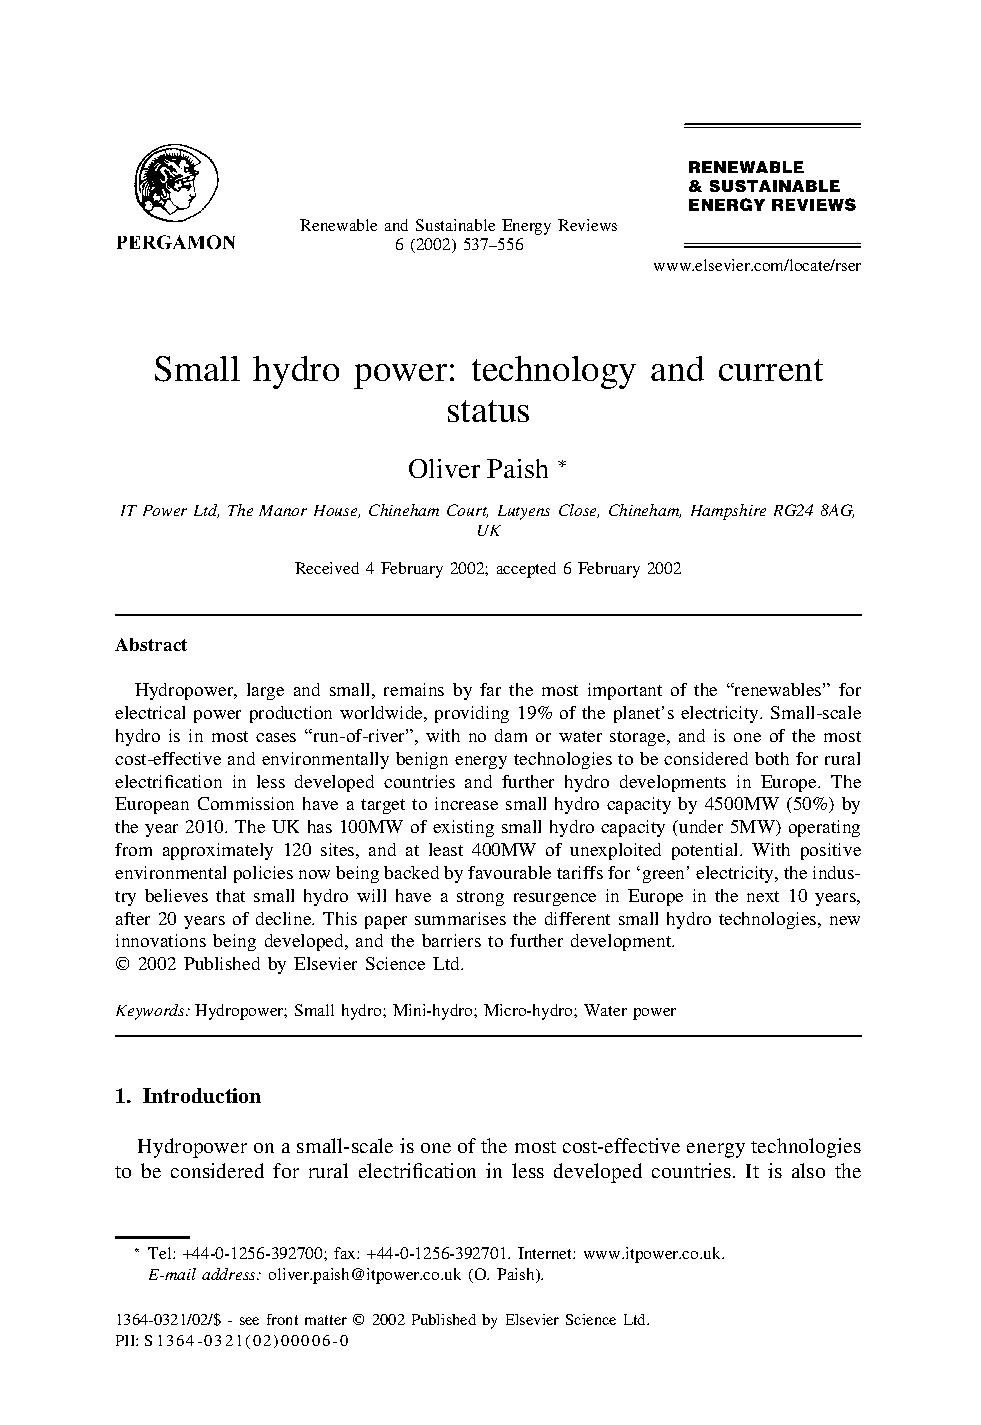 SmallHydroPower.pdf